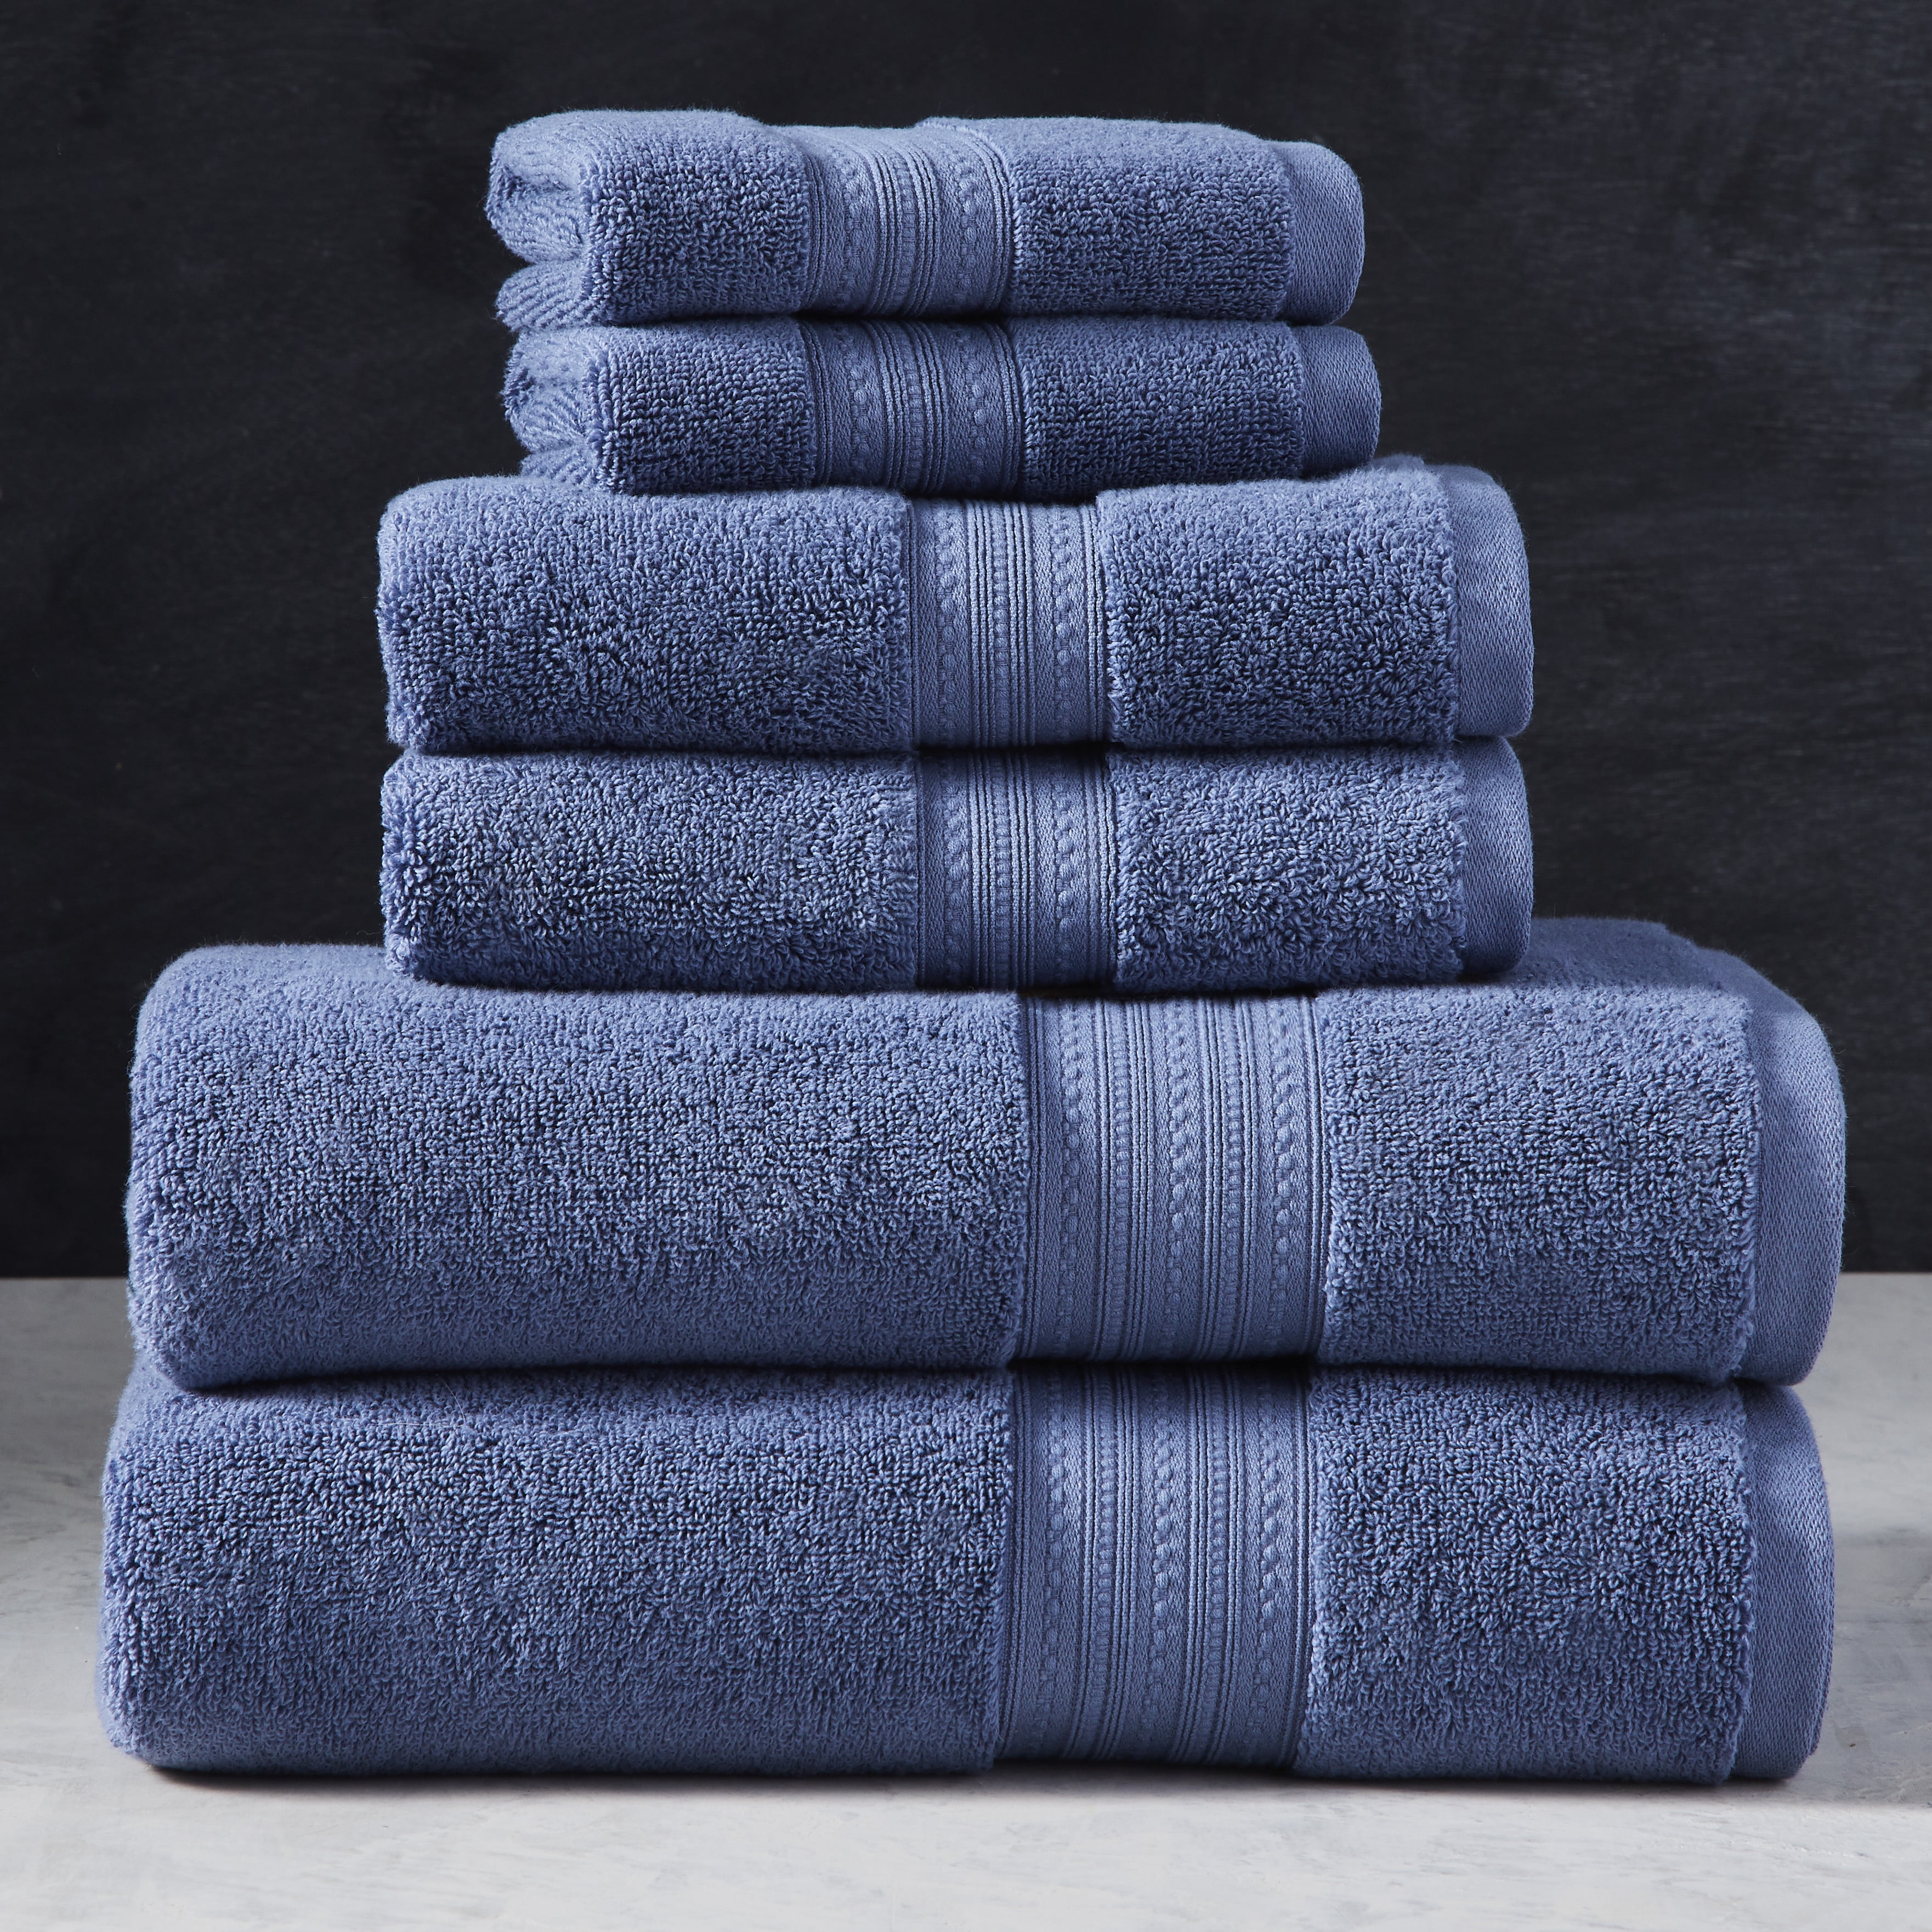 Poketo - #12532 Linen Tea Towel Set in Blue